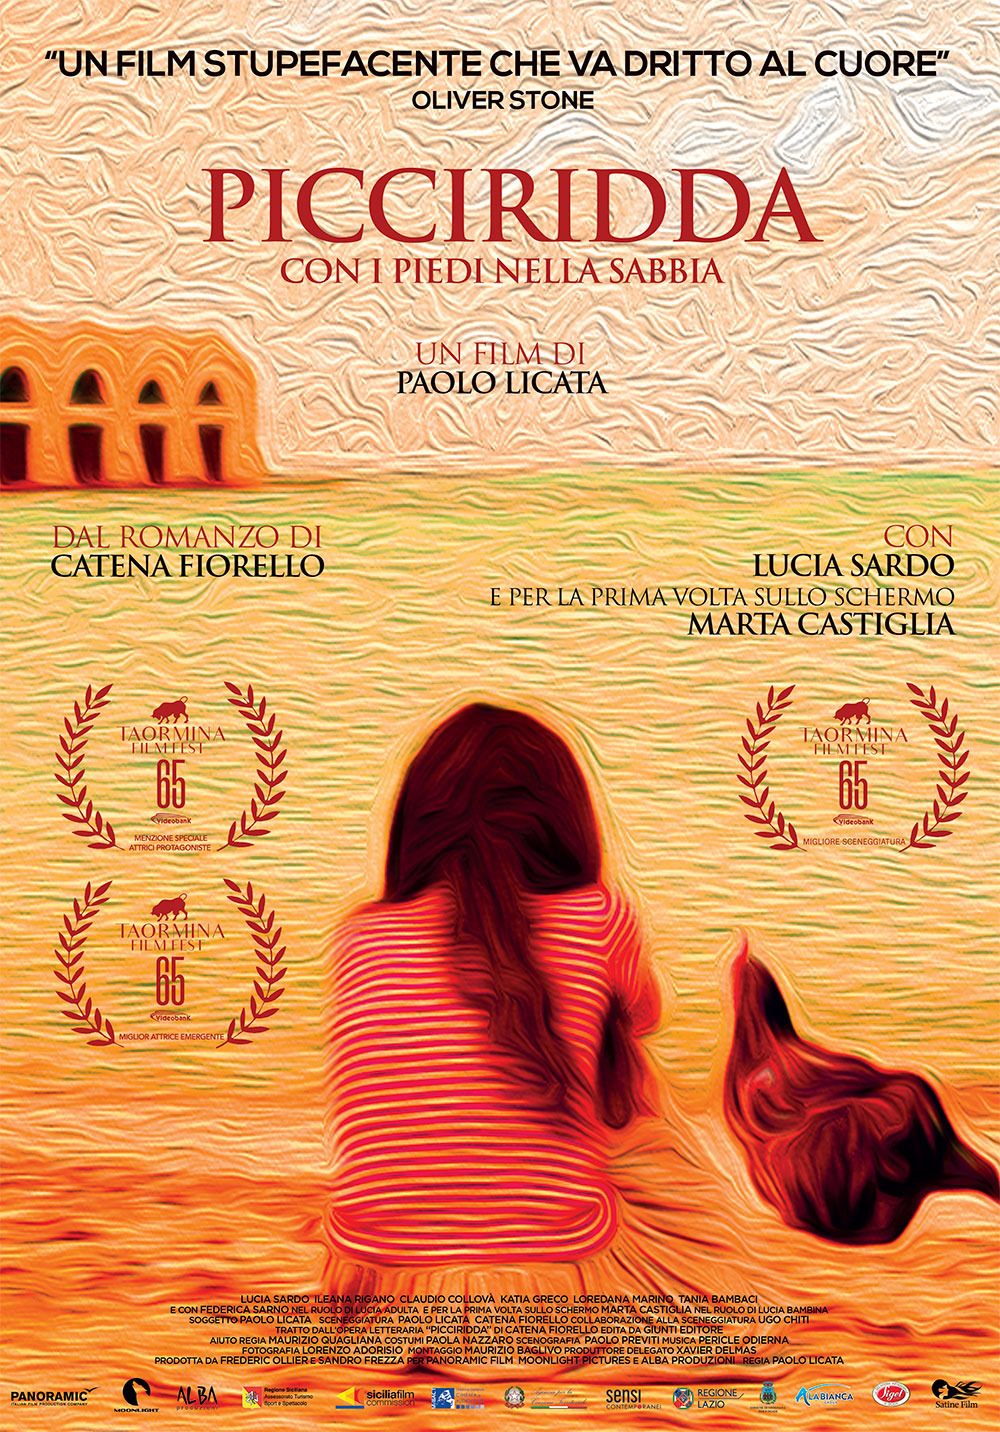 Extra Large Movie Poster Image for Picciridda - Con i piedi nella sabbia 